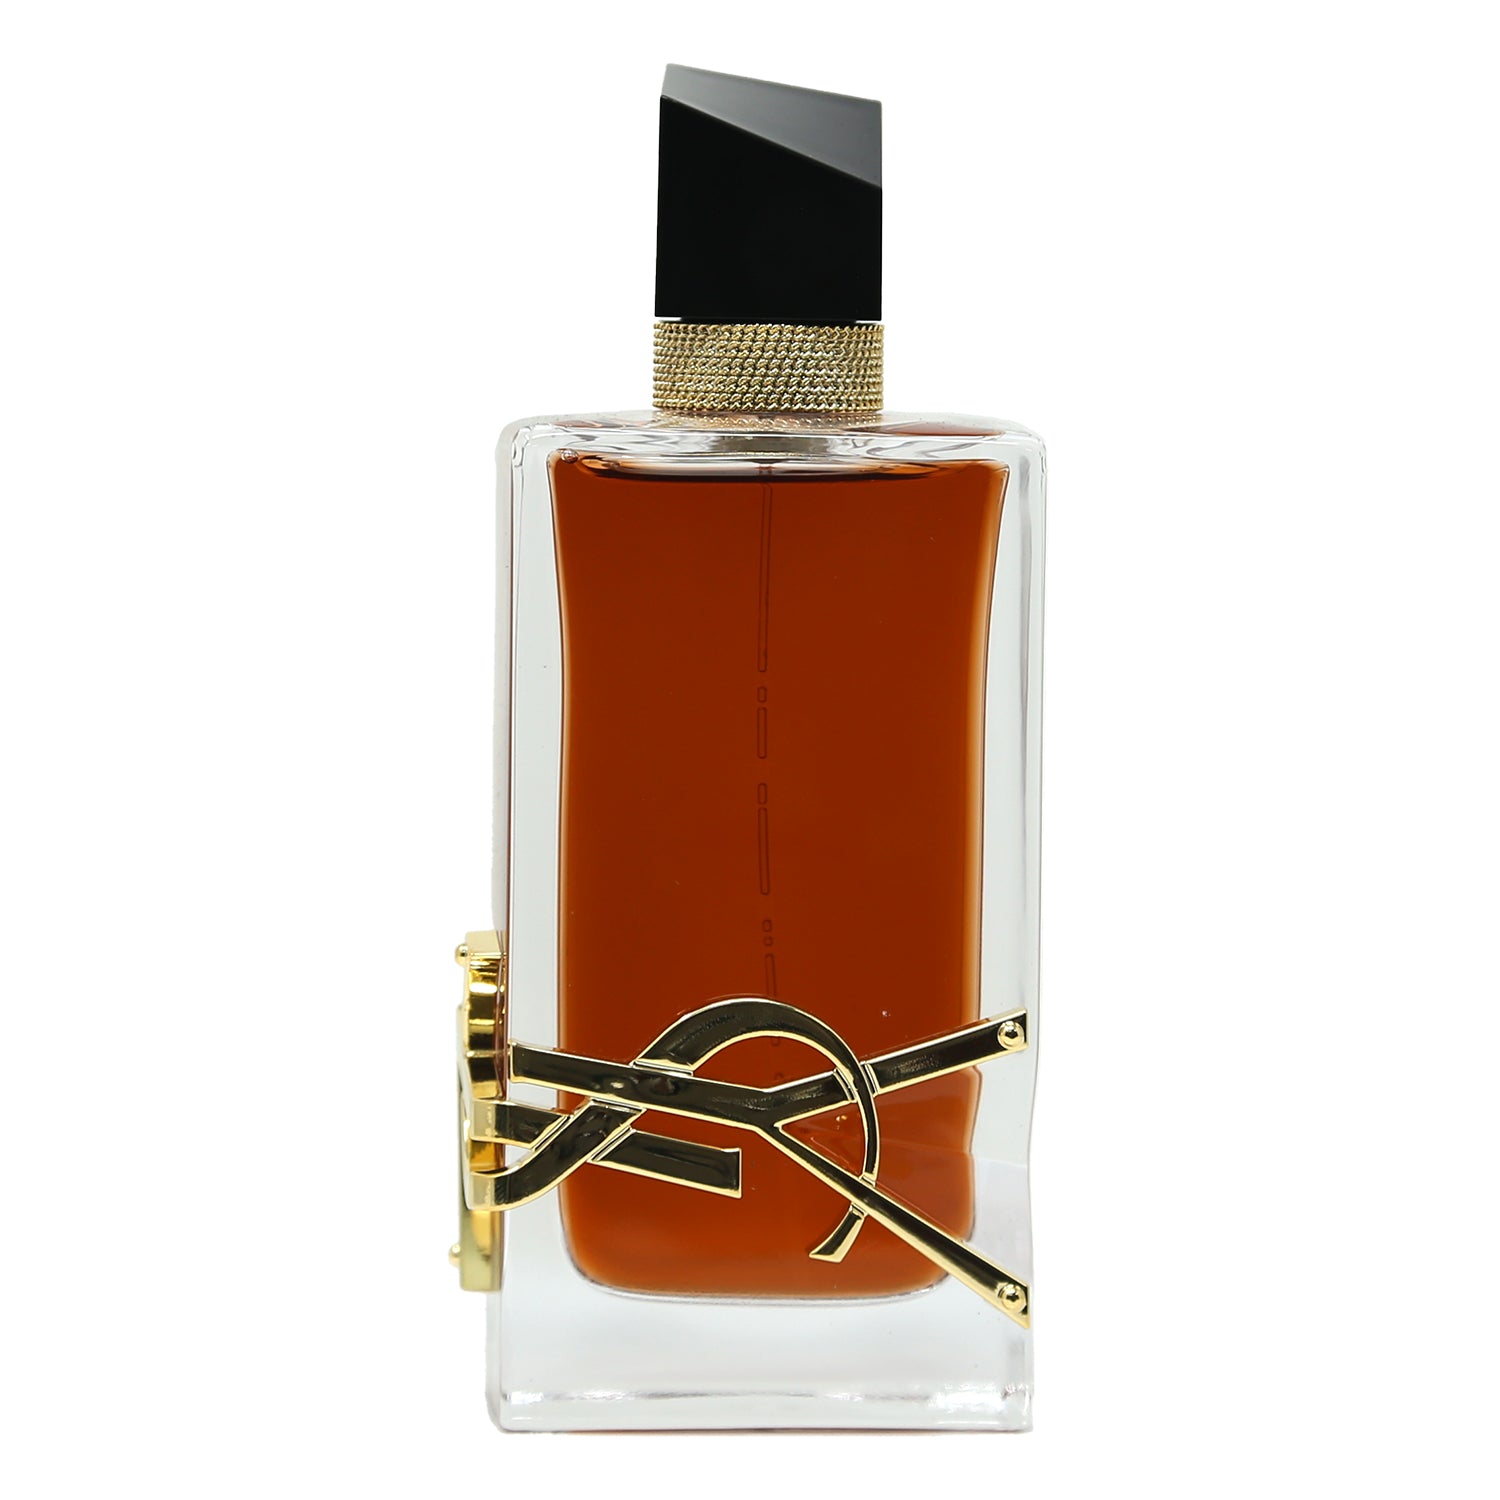 Yves Saint Laurent Libre Le Parfum Perfume Samples